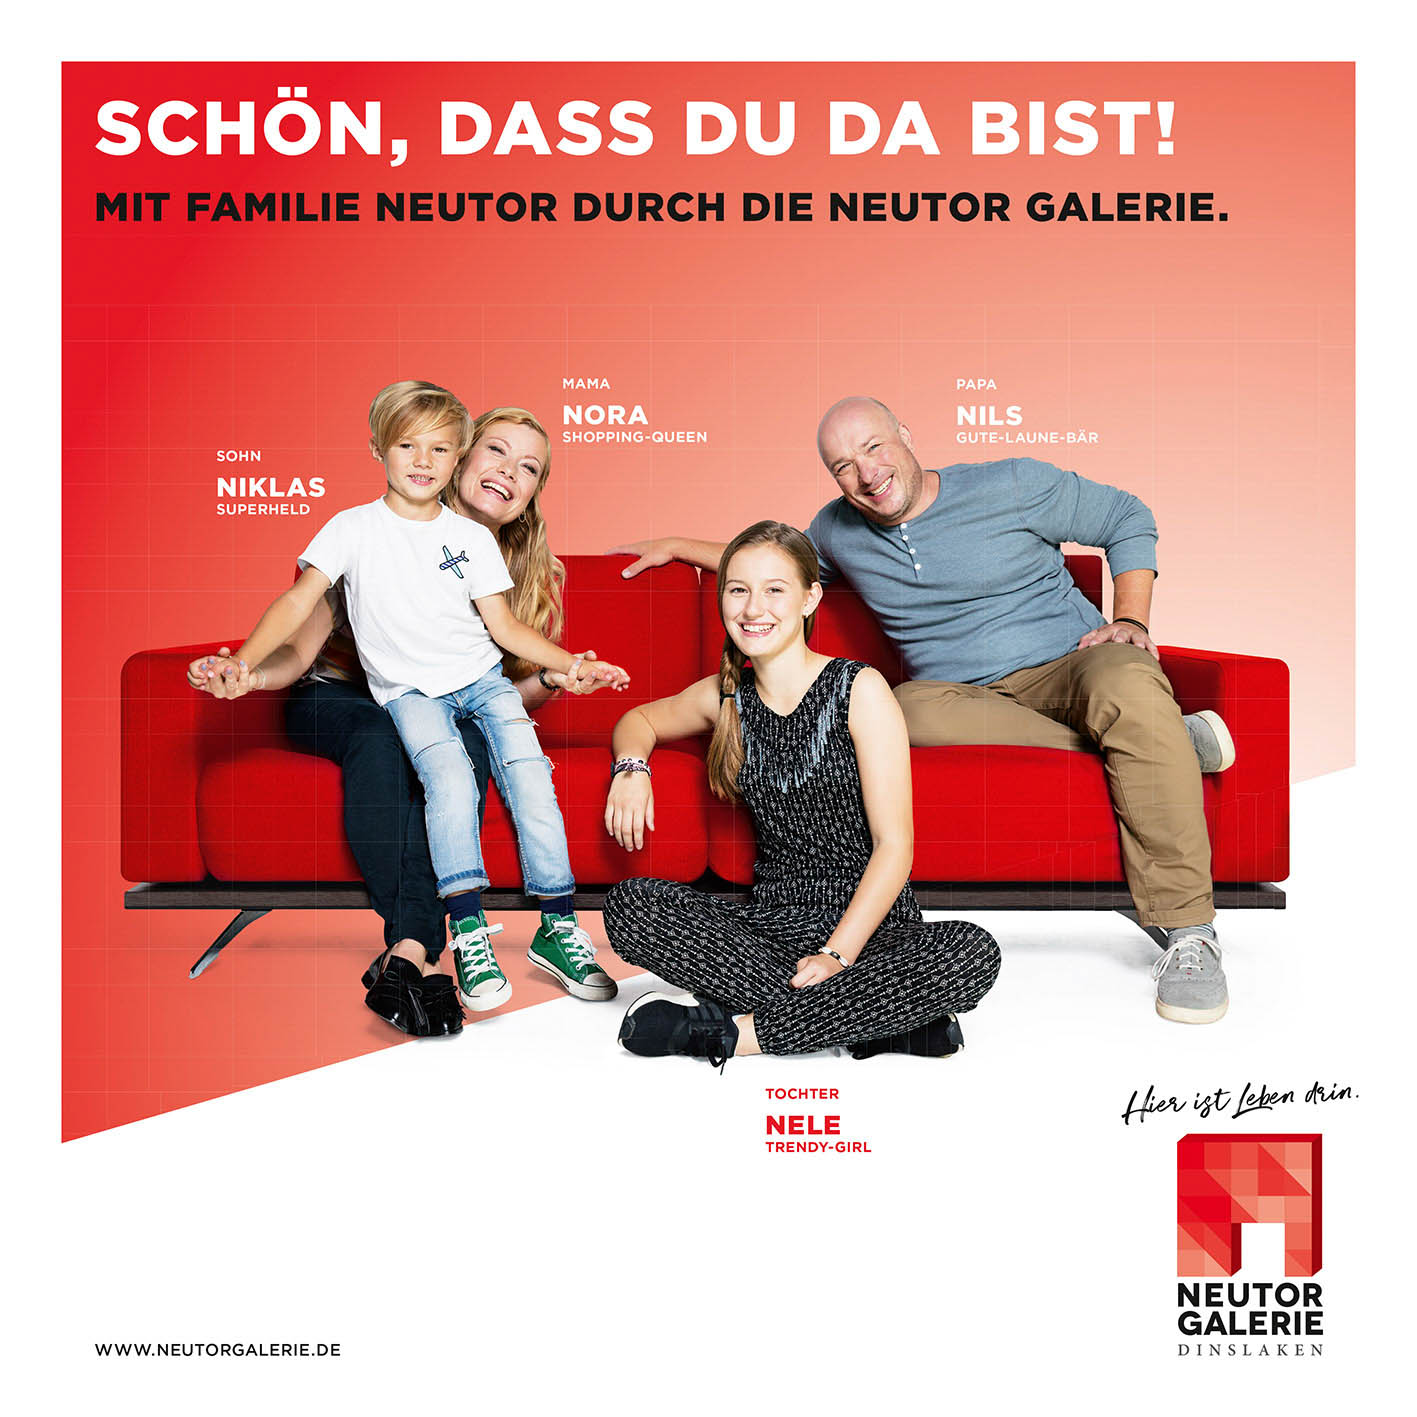 Eine fünfköpfige Familie lächelt fröhlich auf einem roten Sofa mit Werbetext. Sie haben verspielte Posen eingenommen: ein Mann, eine Frau, zwei kleine Mädchen und ein Junge in einer hellen, modernen Umgebung. © Fotografie Tomas Rodriguez